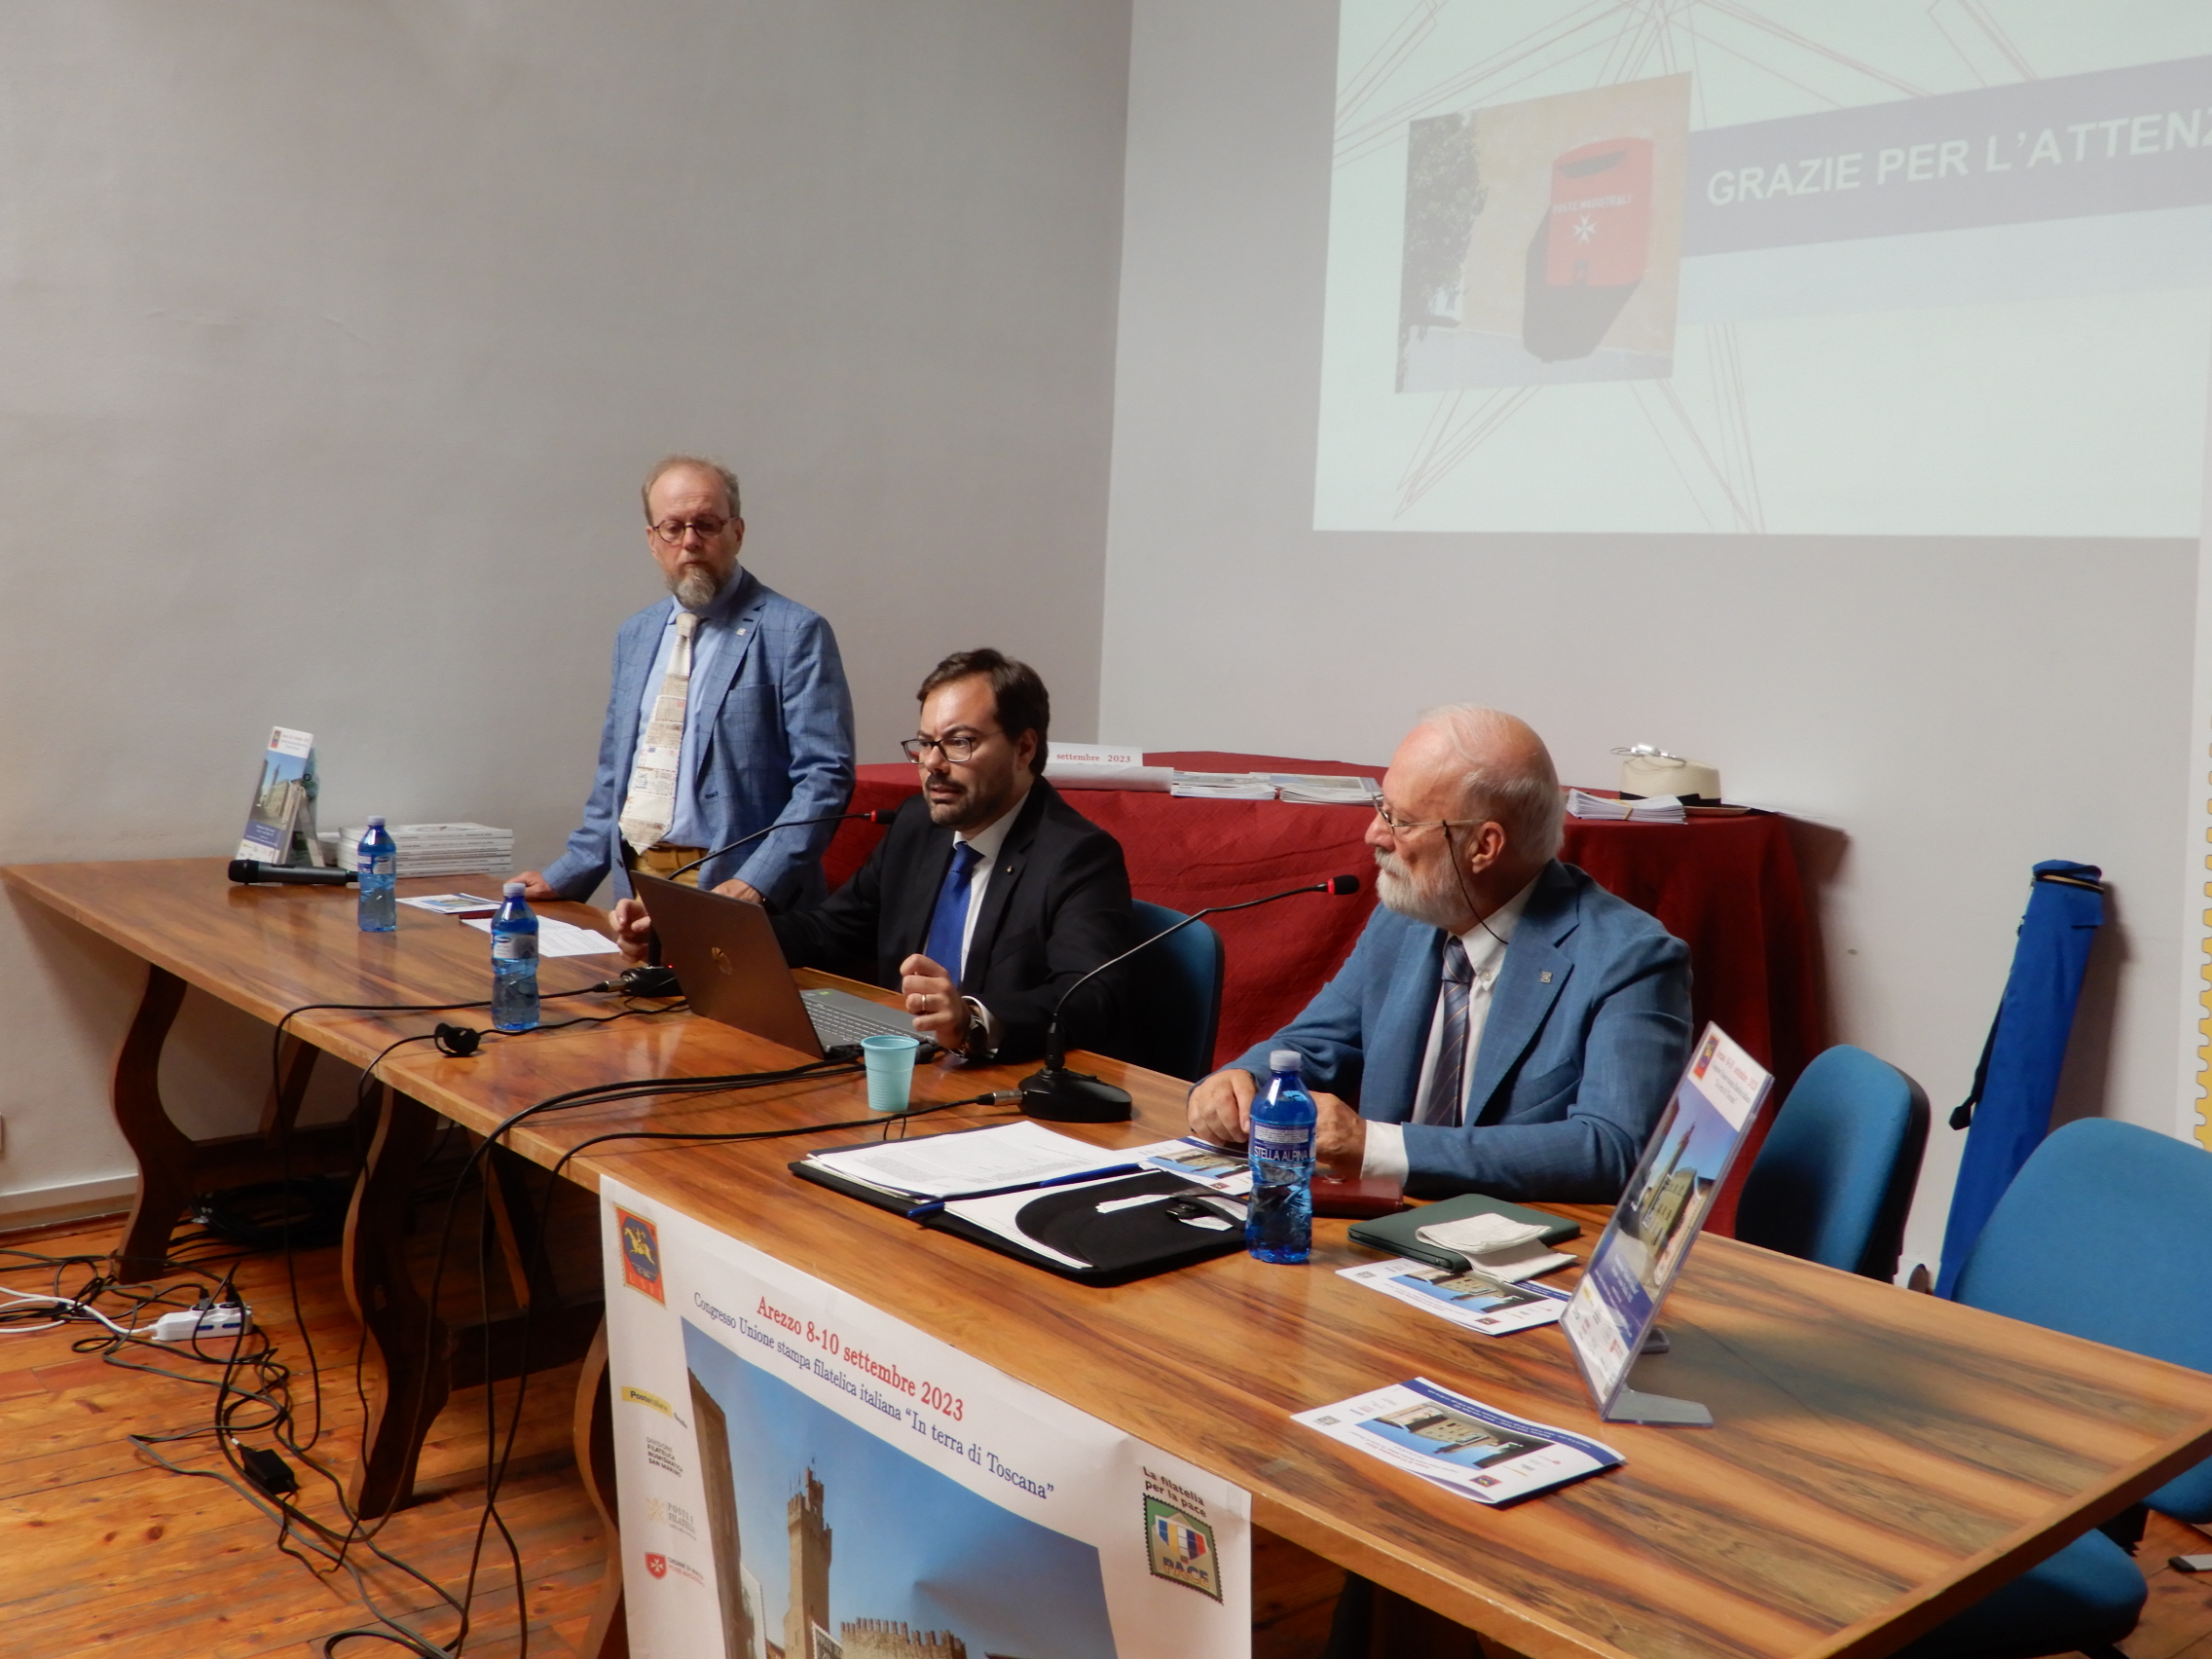 In Arezzo the 2023 Congress of the Italian Philatelic Press Union